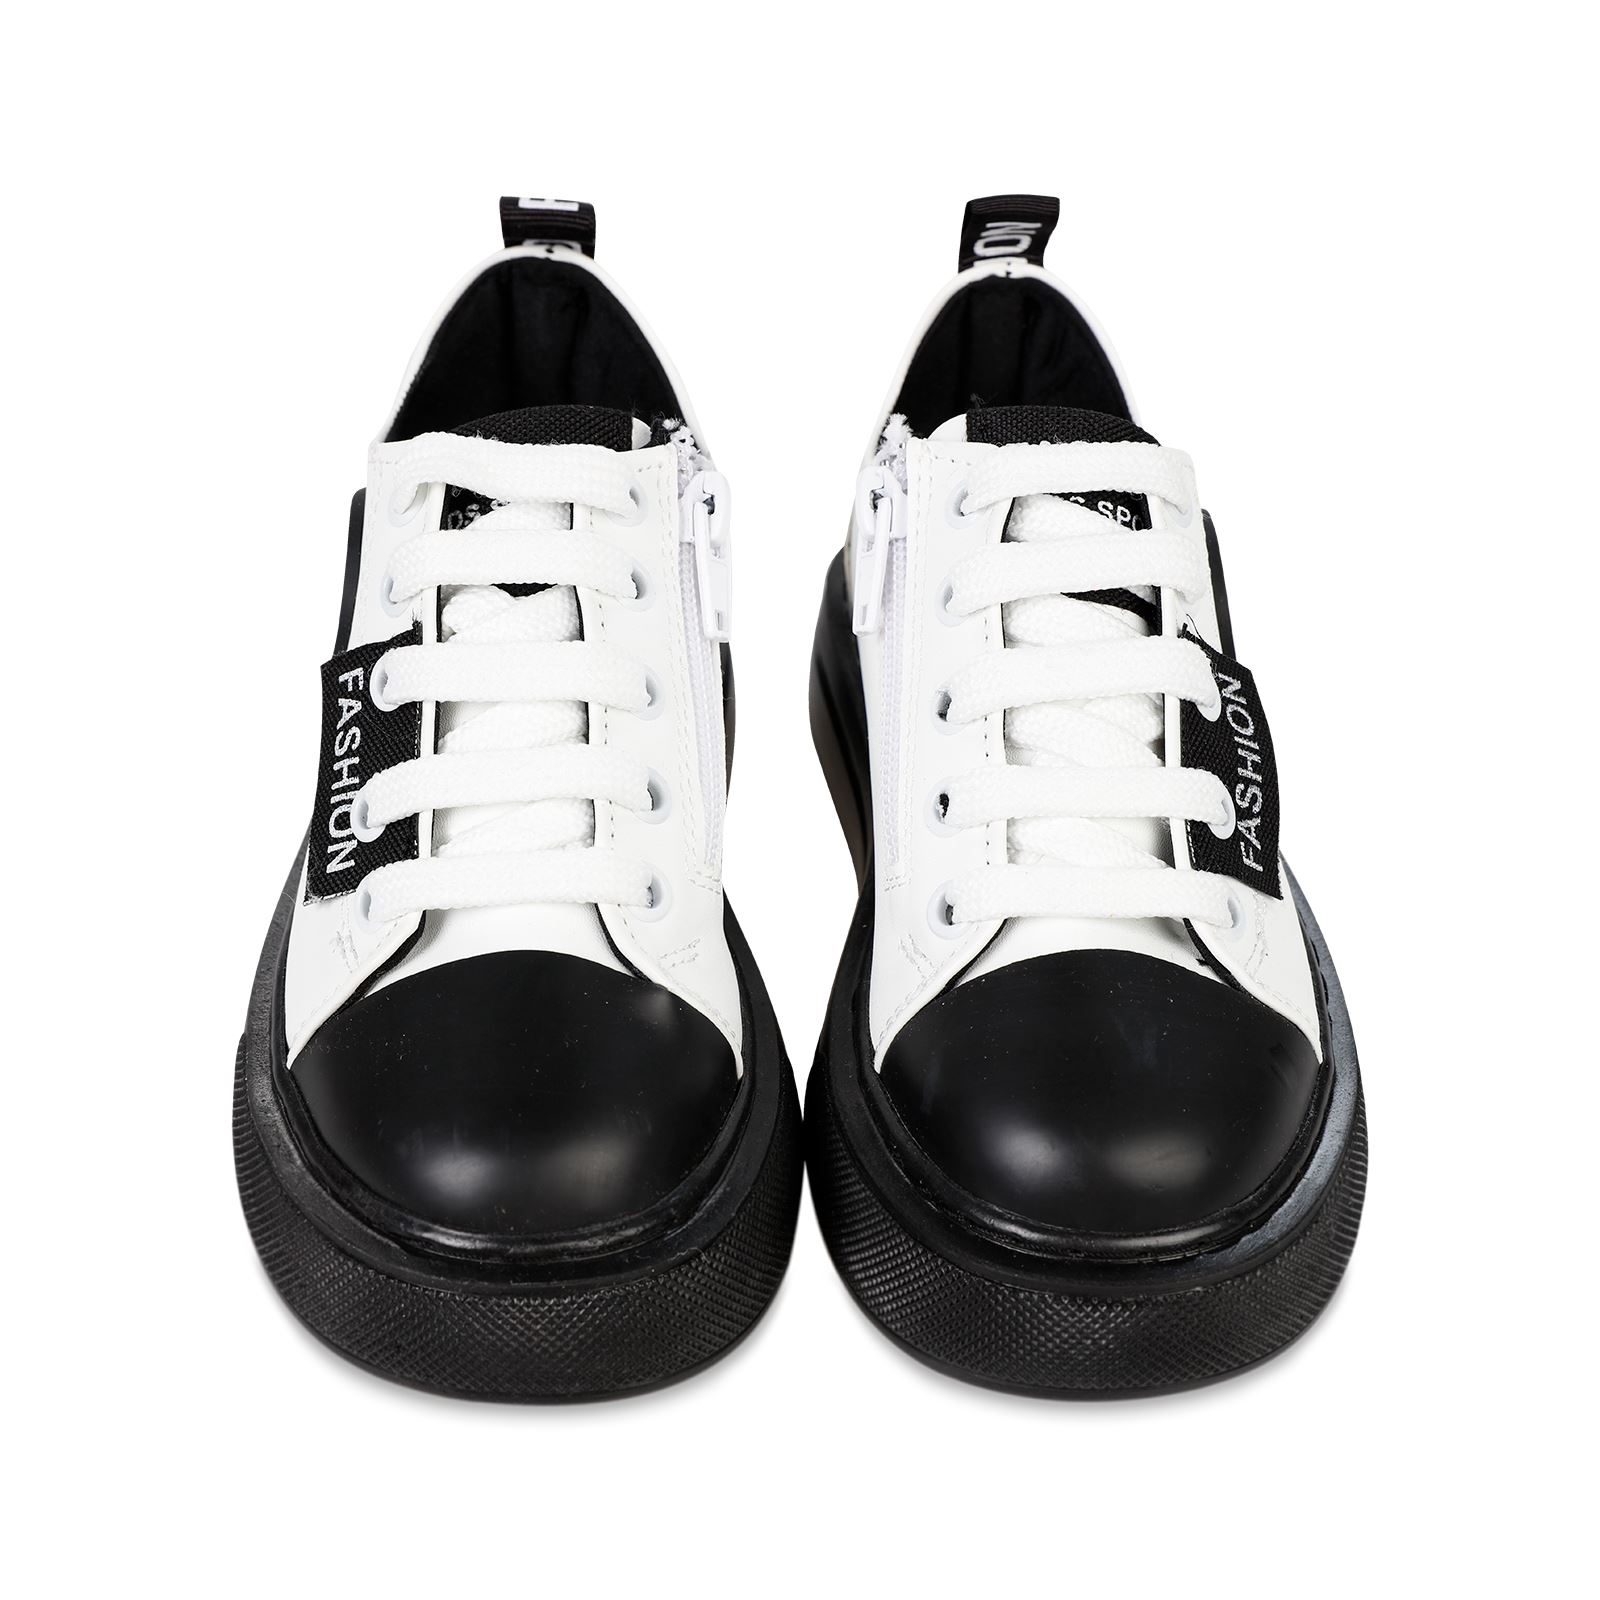 Civil Erkek Çocuk Spor Ayakkabı 26-30 Numara Beyaz